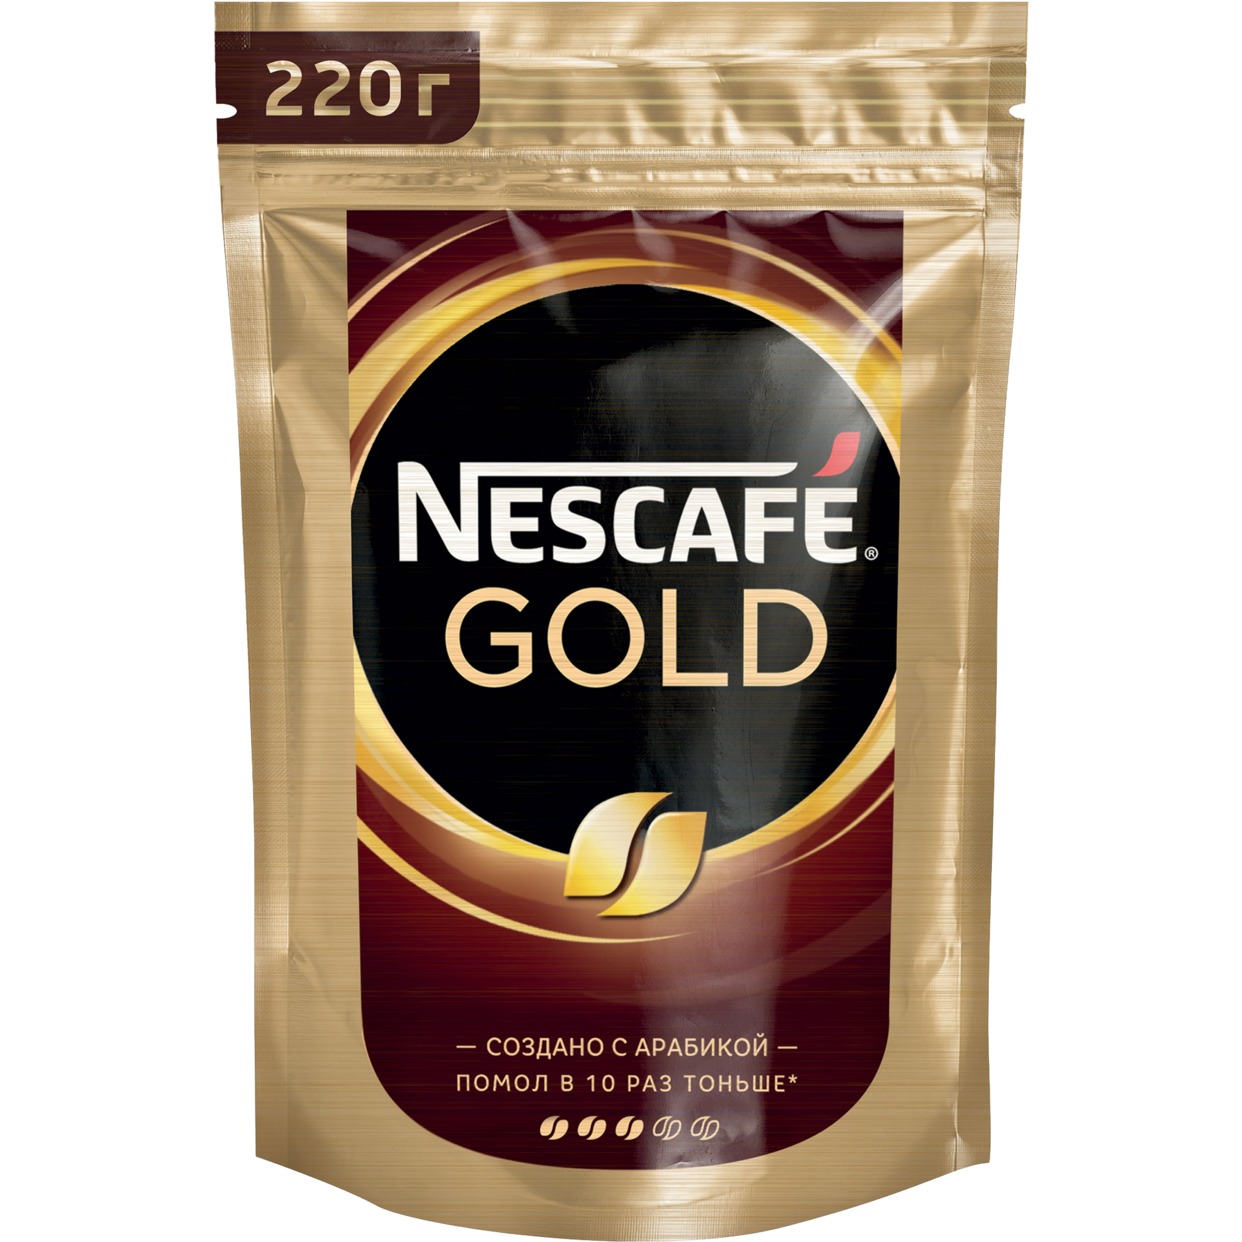 Кофе Nescafe Gold, растворимый, 220 г по акции в Пятерочке